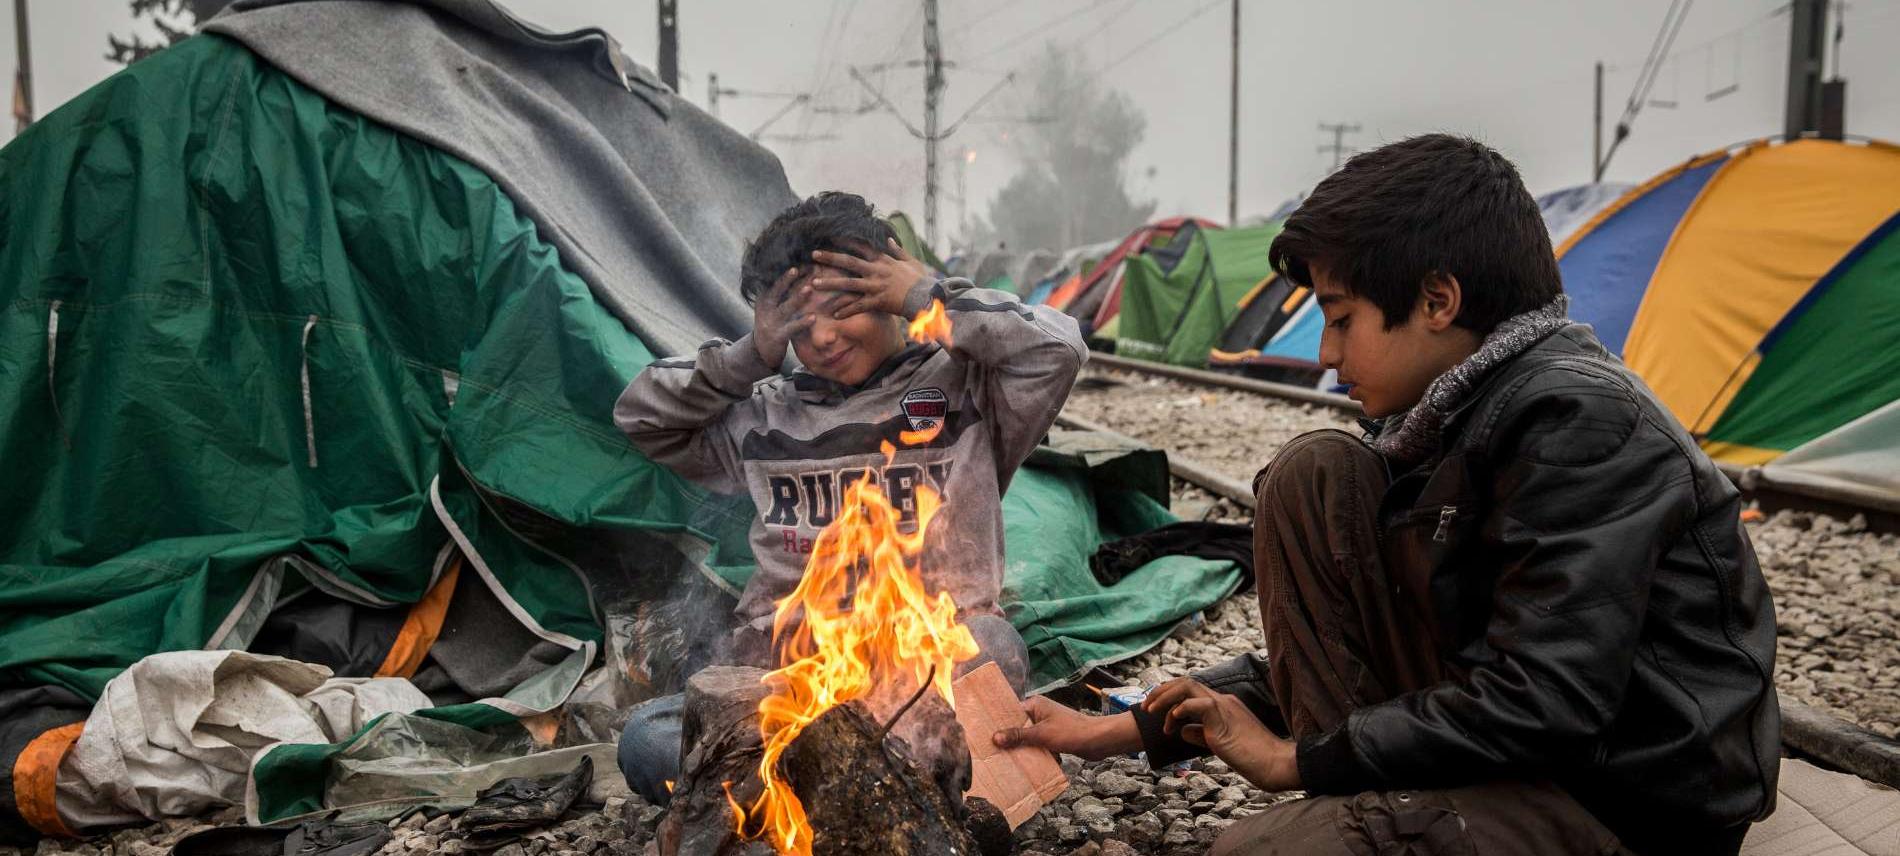 Rauch und Feuer gefährden die Gesundheit der Flüchtlinge. Foto: Olmo Calvo